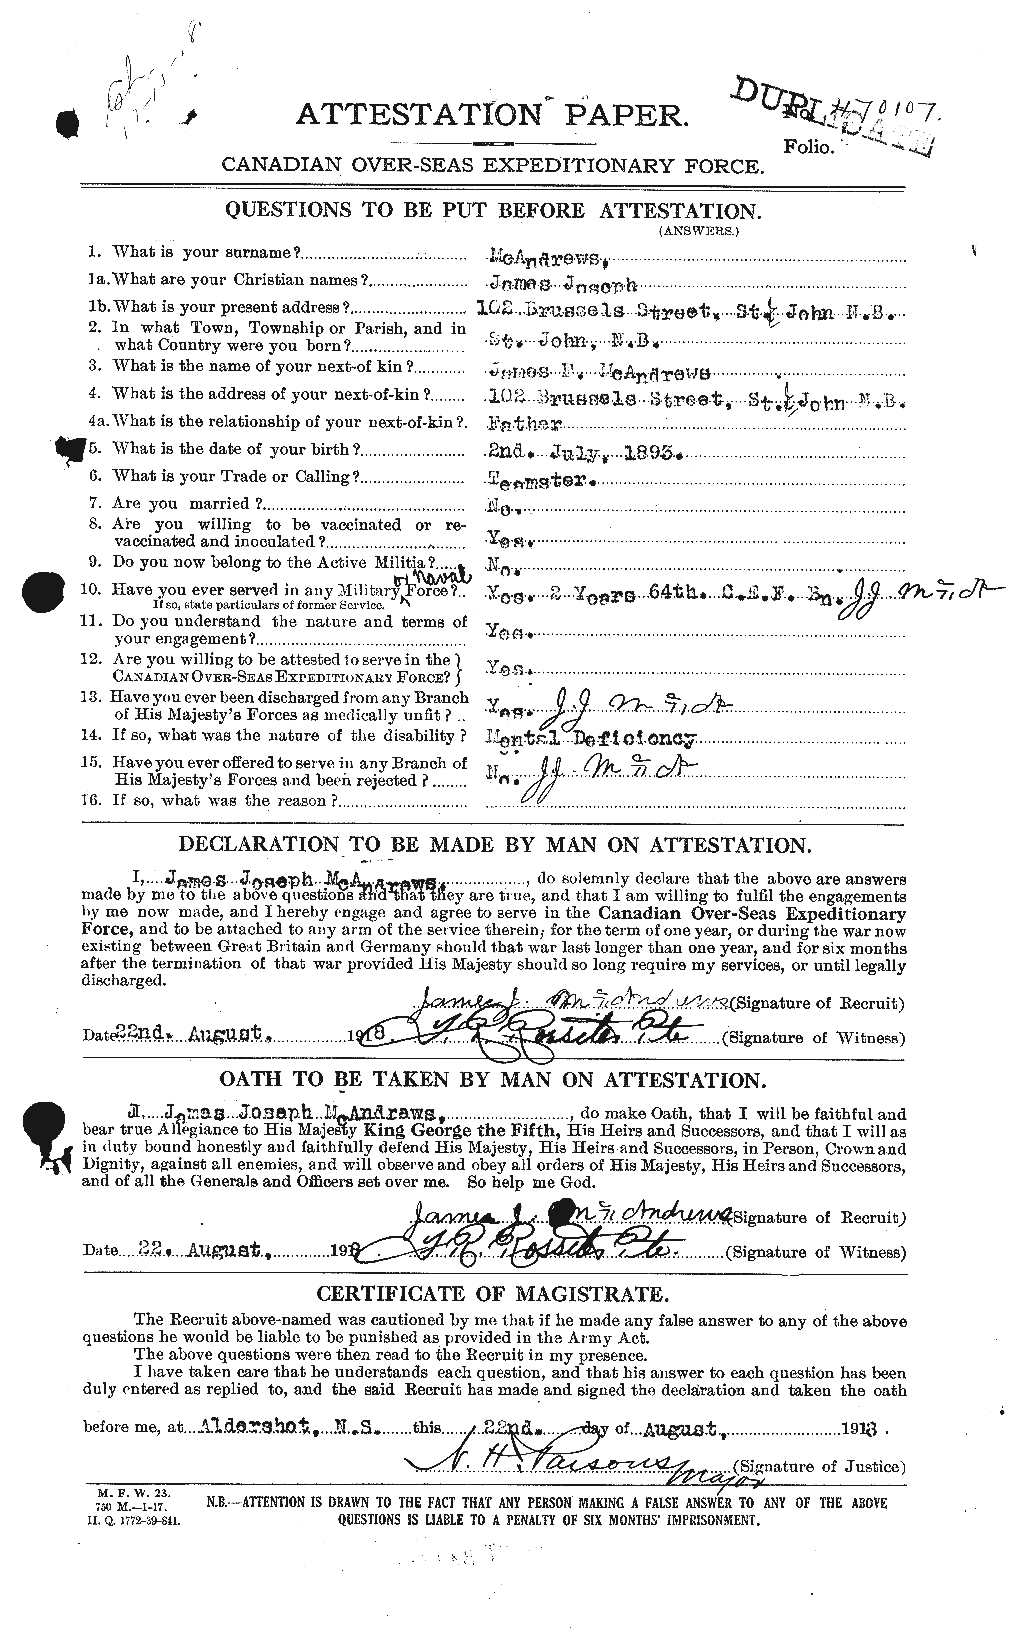 Dossiers du Personnel de la Première Guerre mondiale - CEC 131403a